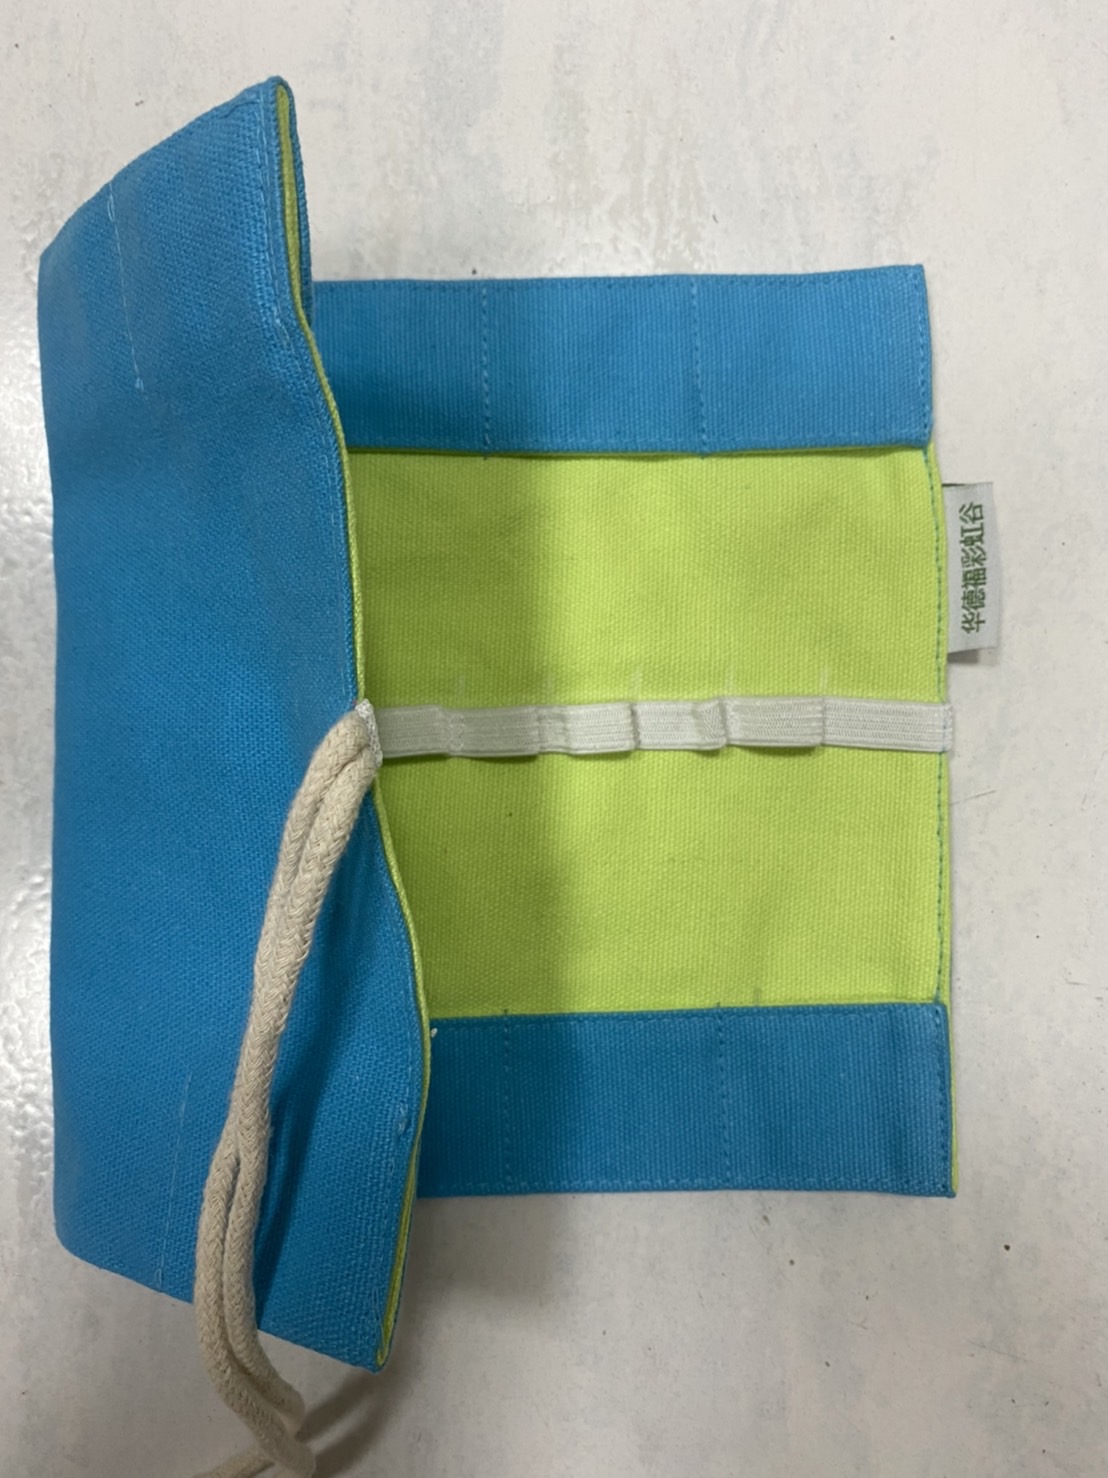 蠟磚蠟筆袋(藍綠色)